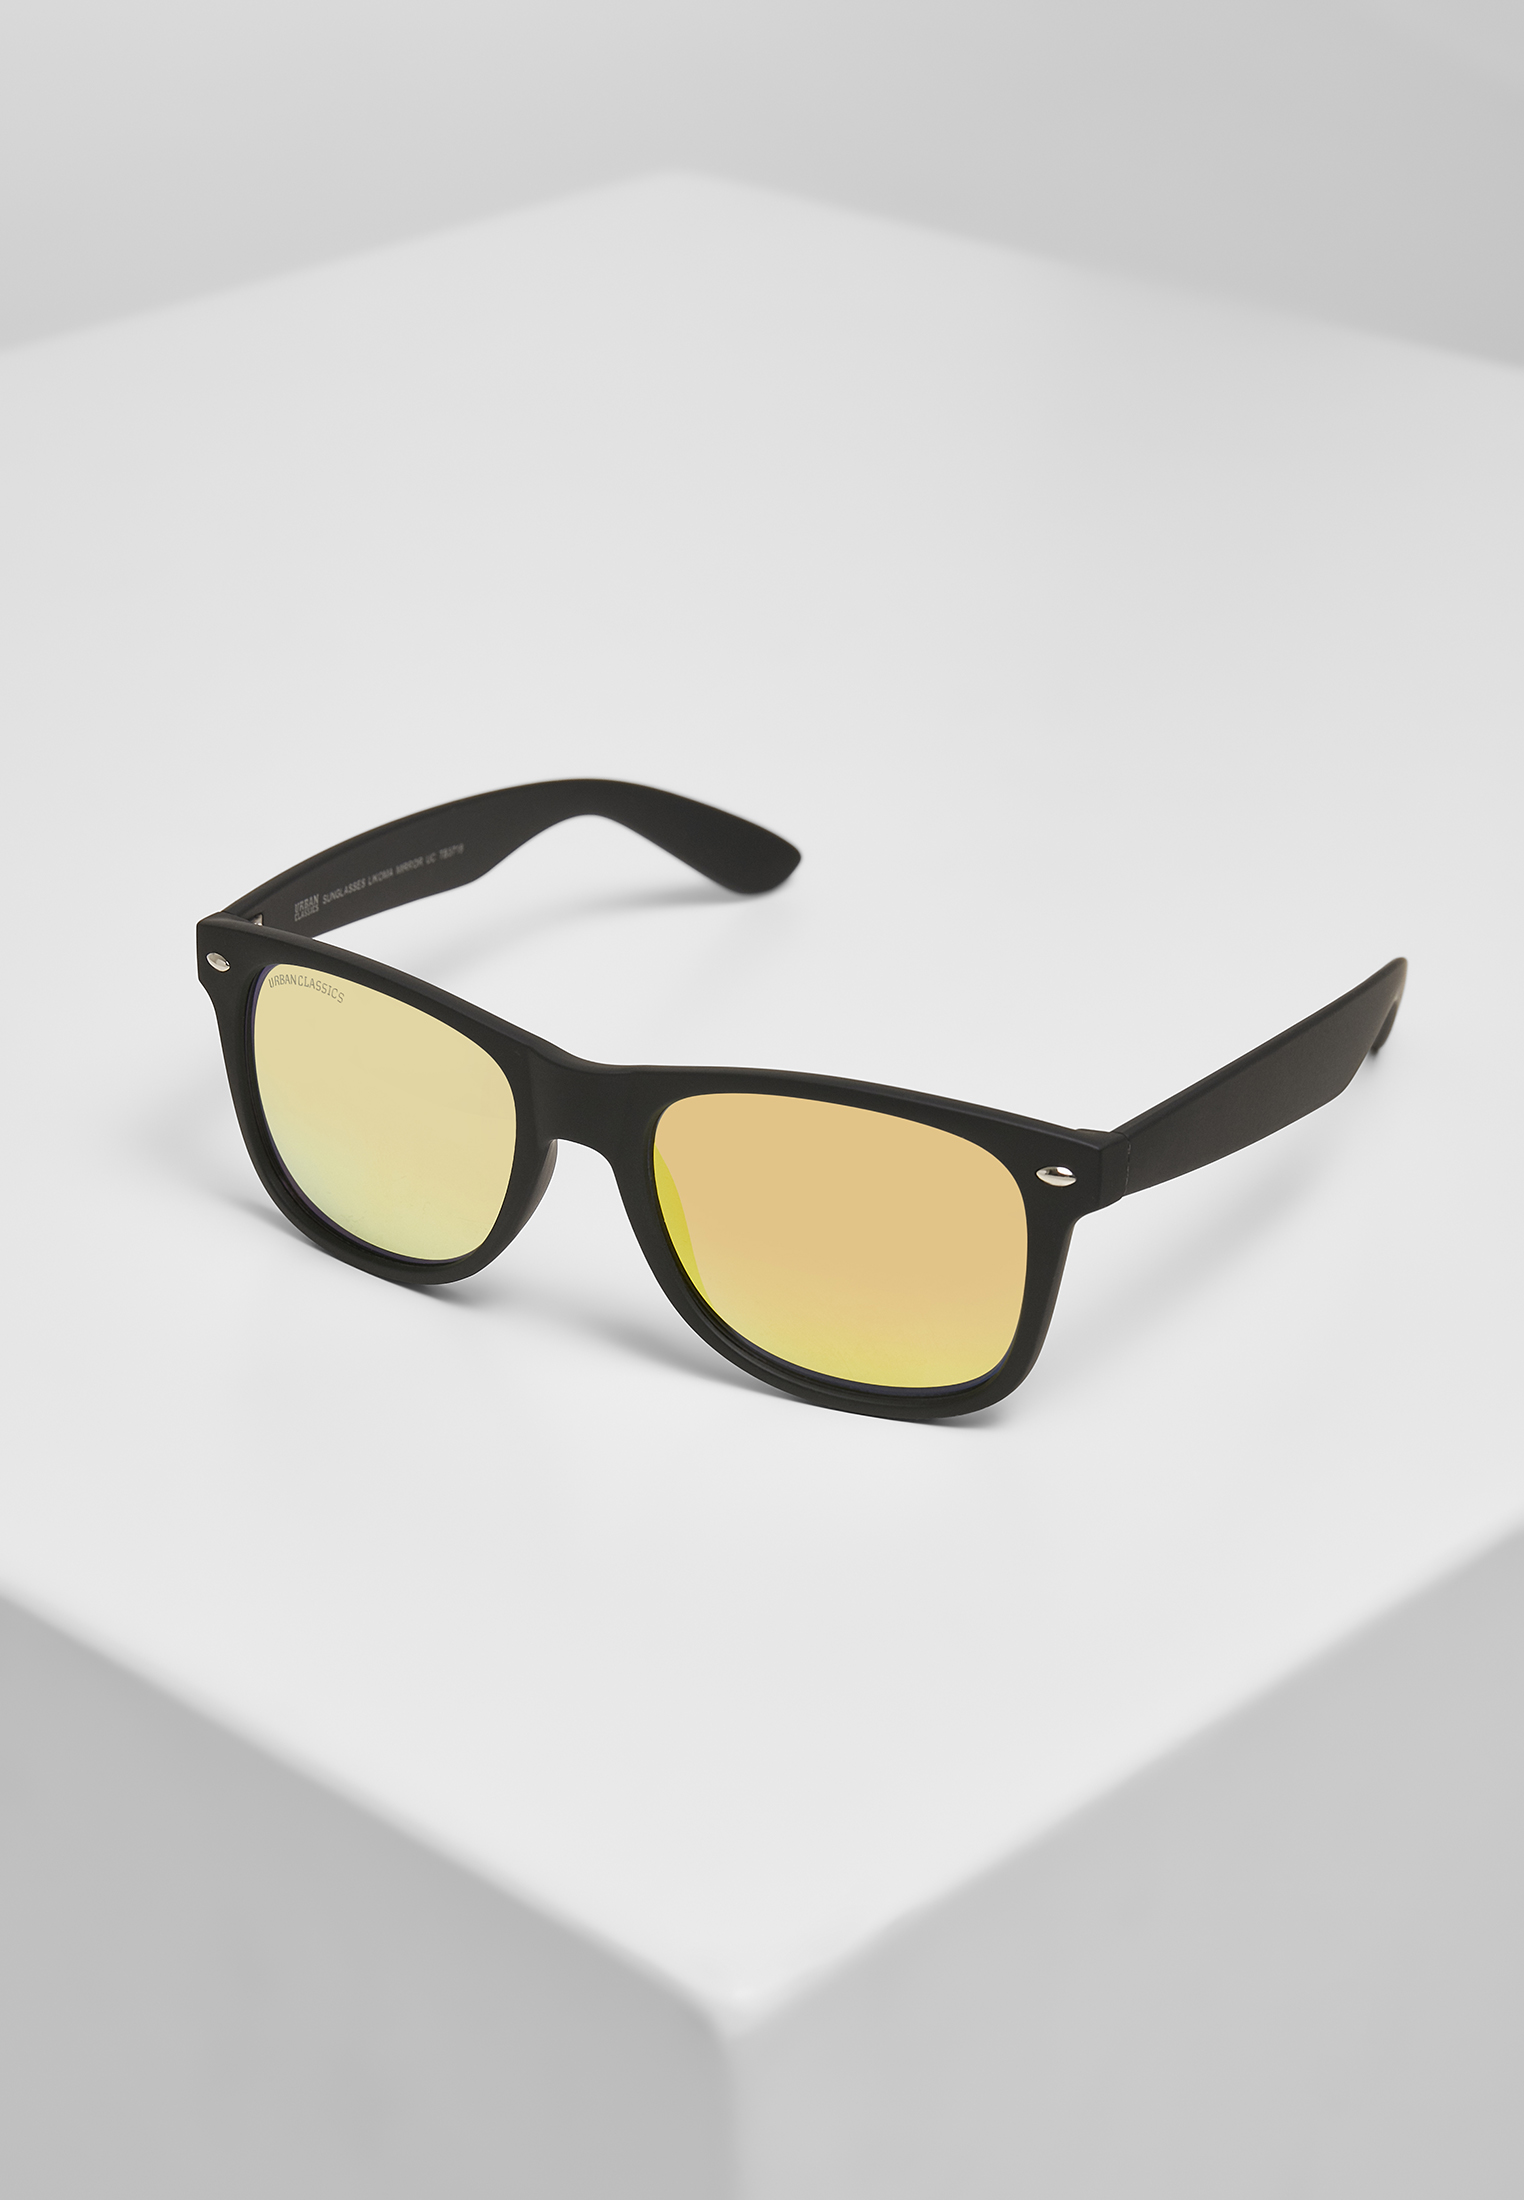 Sonnenbrillen Sunglasses Likoma Mirror UC in Farbe blk/orange